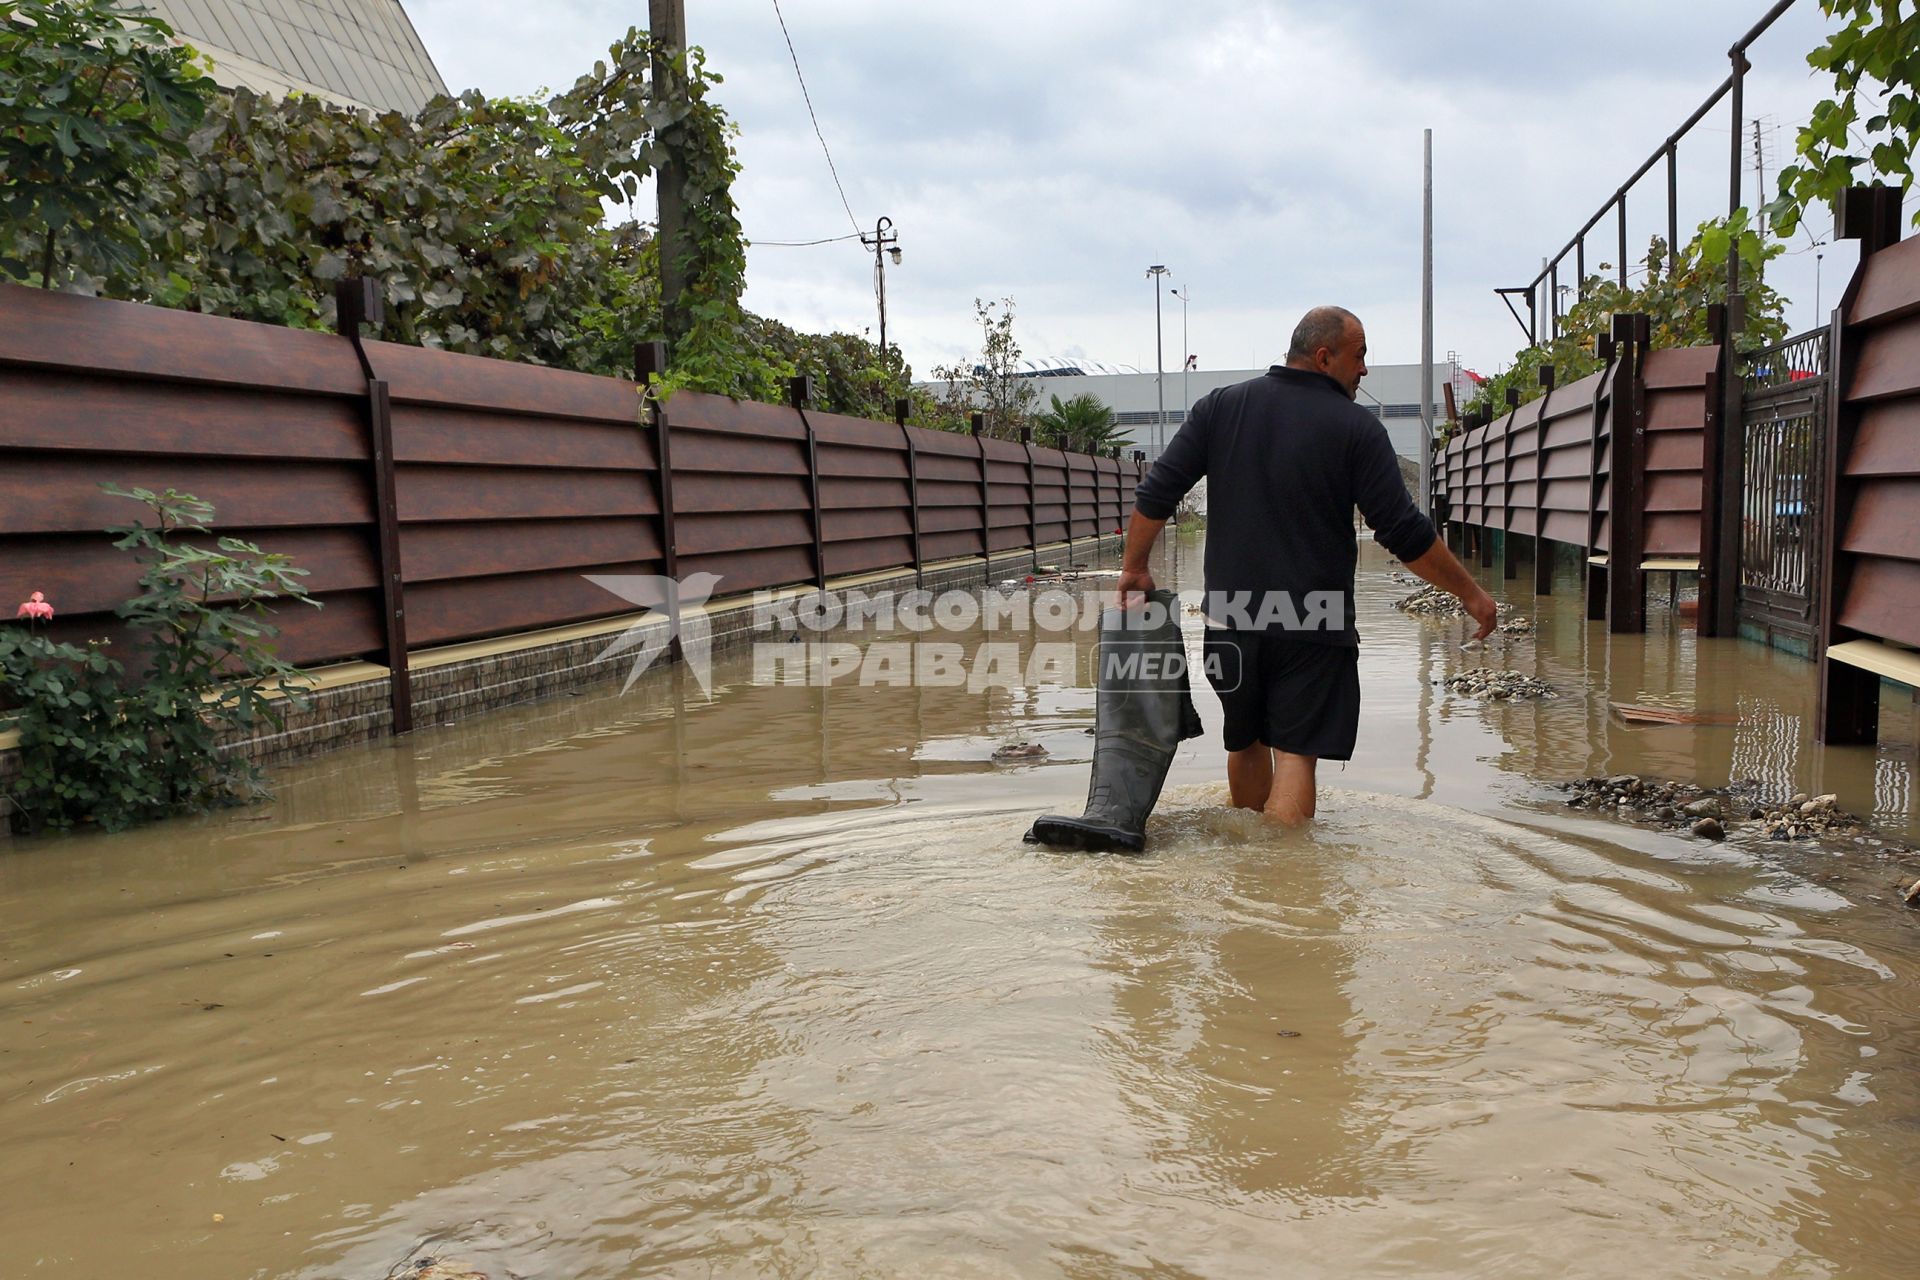 Наводнение в Сочи. Мужчина идет по затопленной улице.